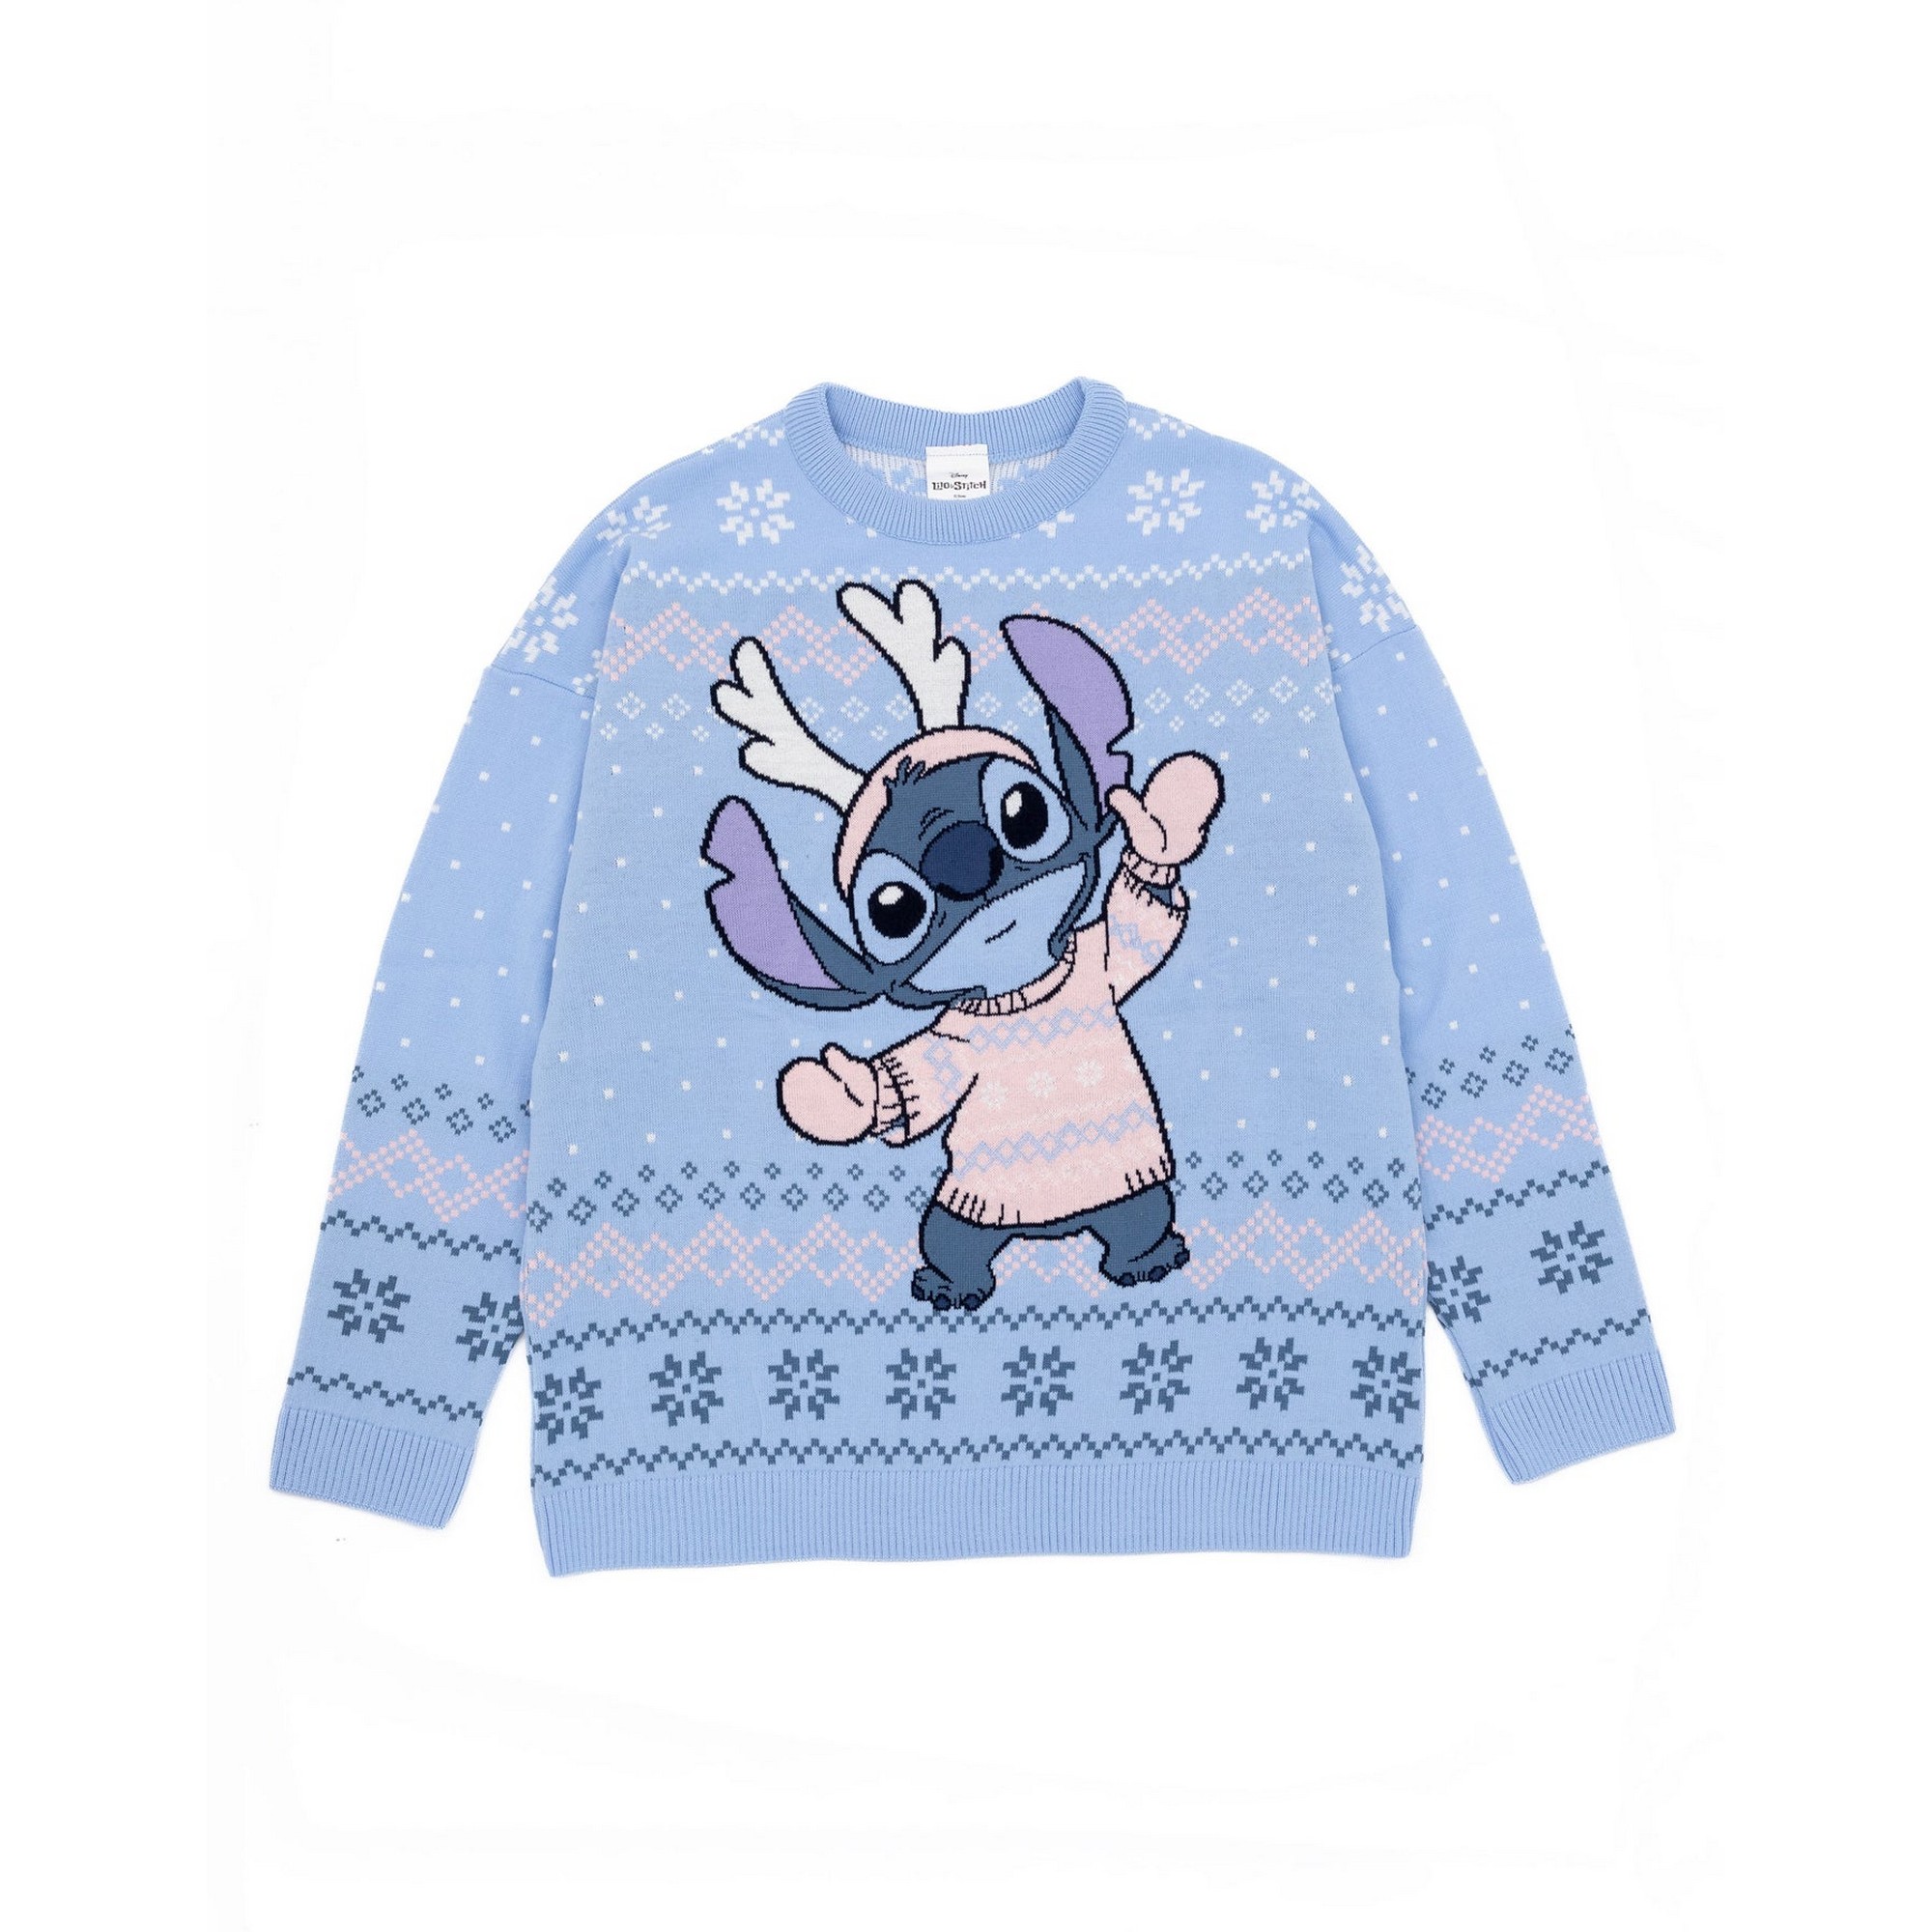 (リロ・アンド・スティッチ) Lilo & Stitch オフィシャル商品 レディース ニット クリスマスセーター 長袖 トップス 【海外通販】画像